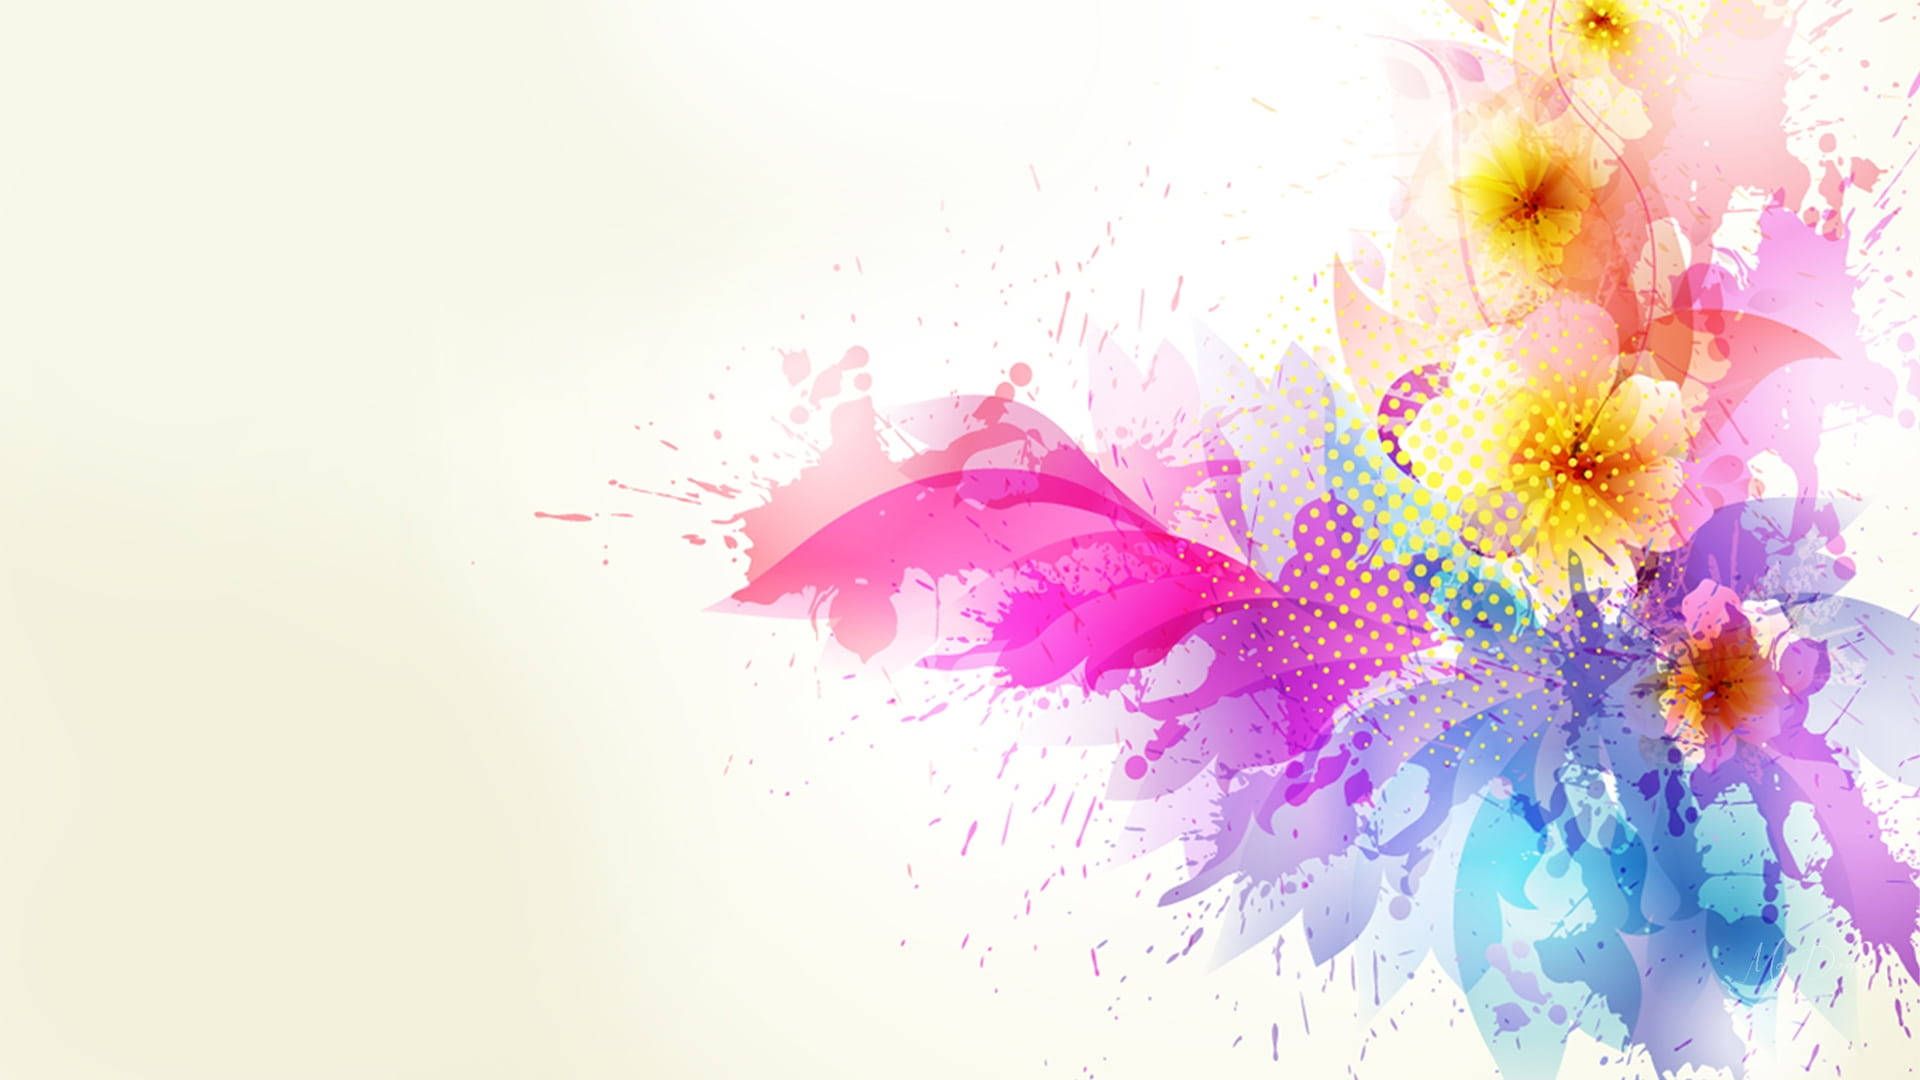 Kaleidoscope of Colors: Vibrant Splatter Paint Artwork Wallpaper